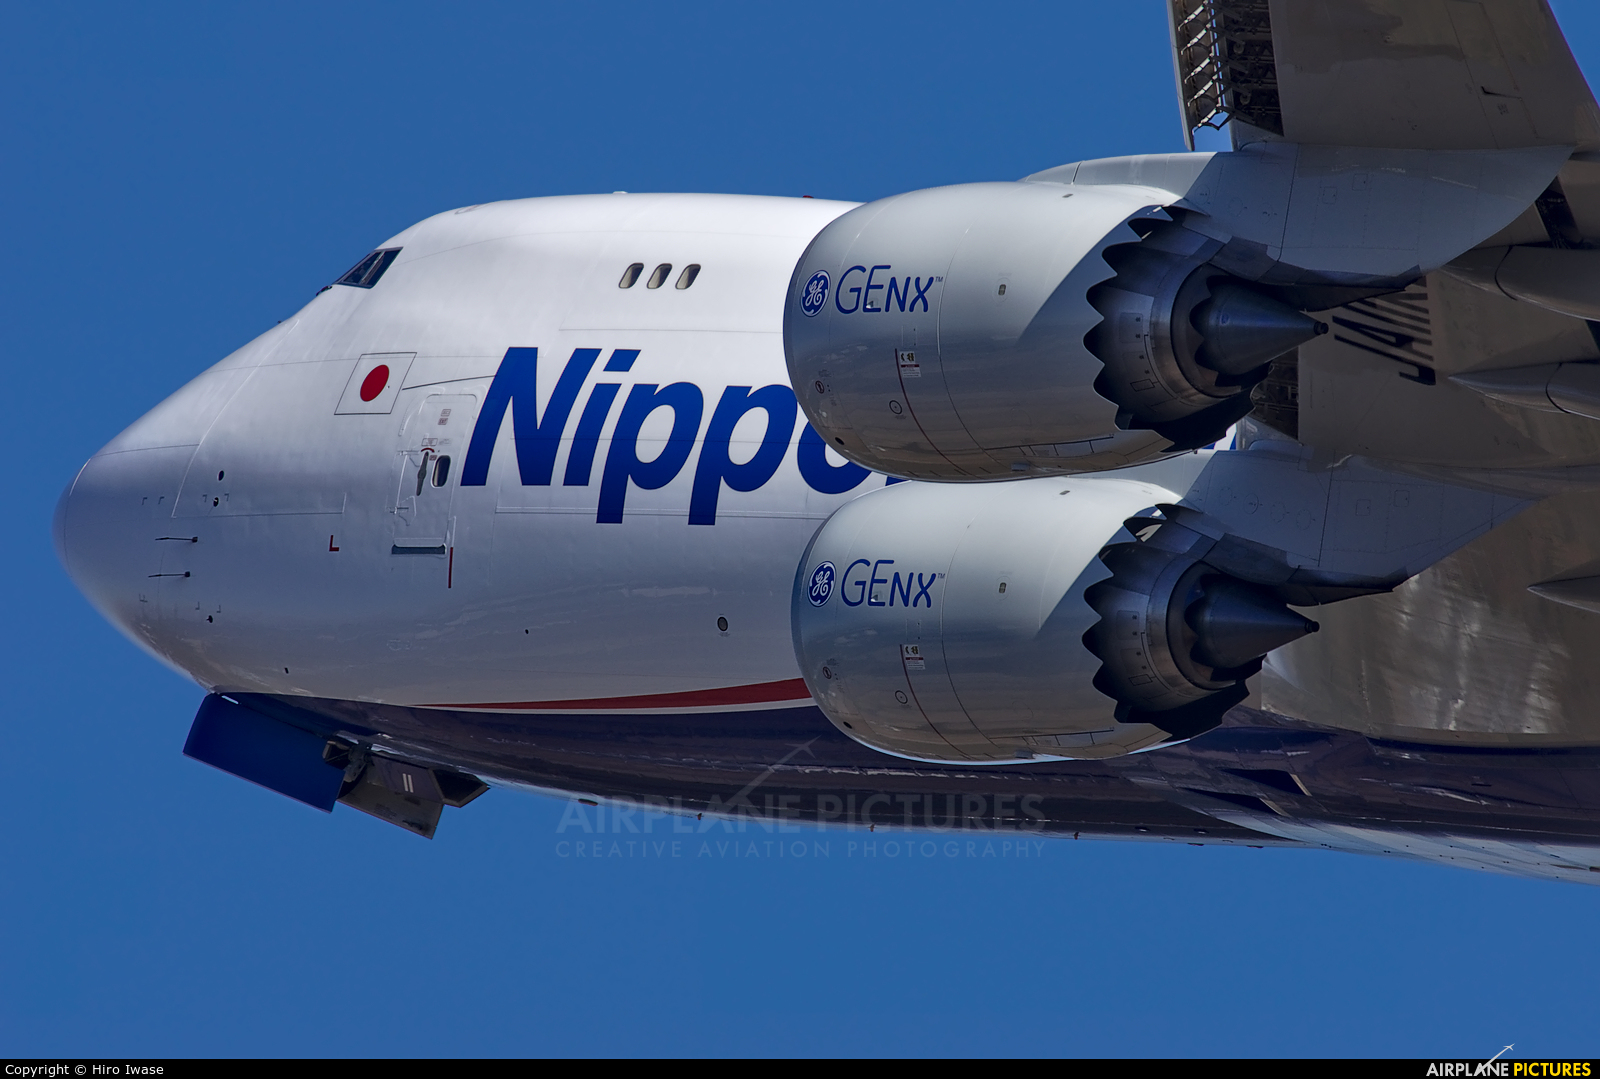 Nippon Cargo Airlines JA11KZ aircraft at Tokyo - Narita Intl